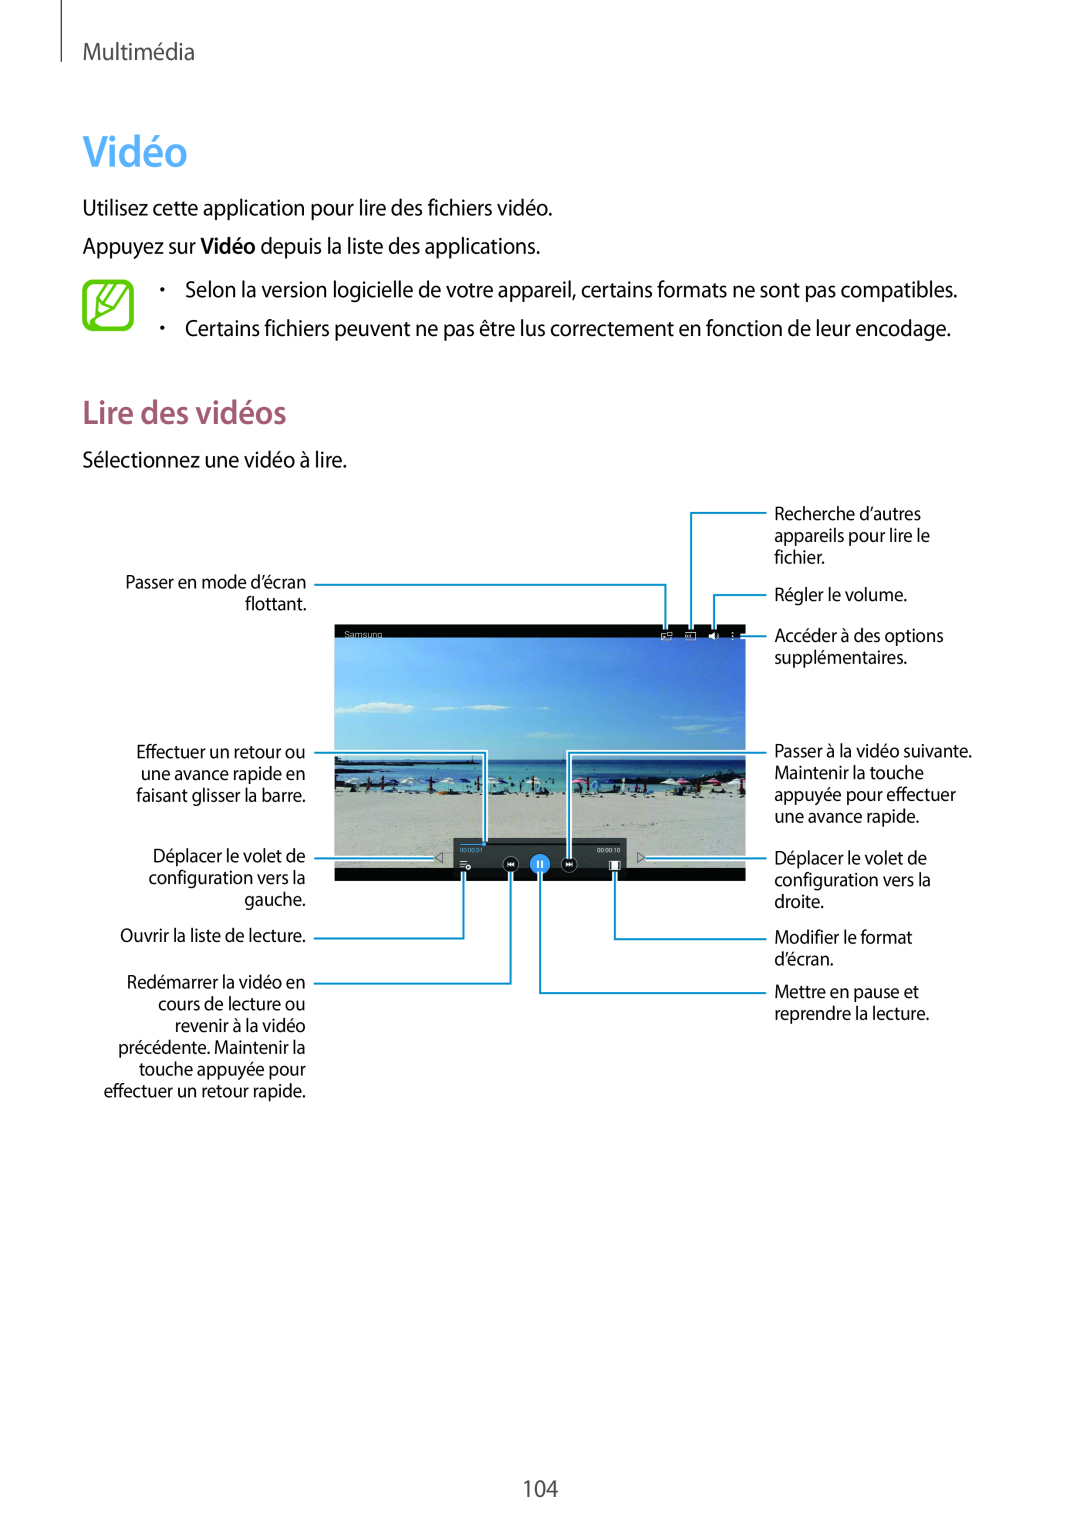 Samsung SM-T320NZWAXEF manual Vidéo, Lire des vidéos, Multimédia, Déplacer le volet de, configuration vers la, gauche 